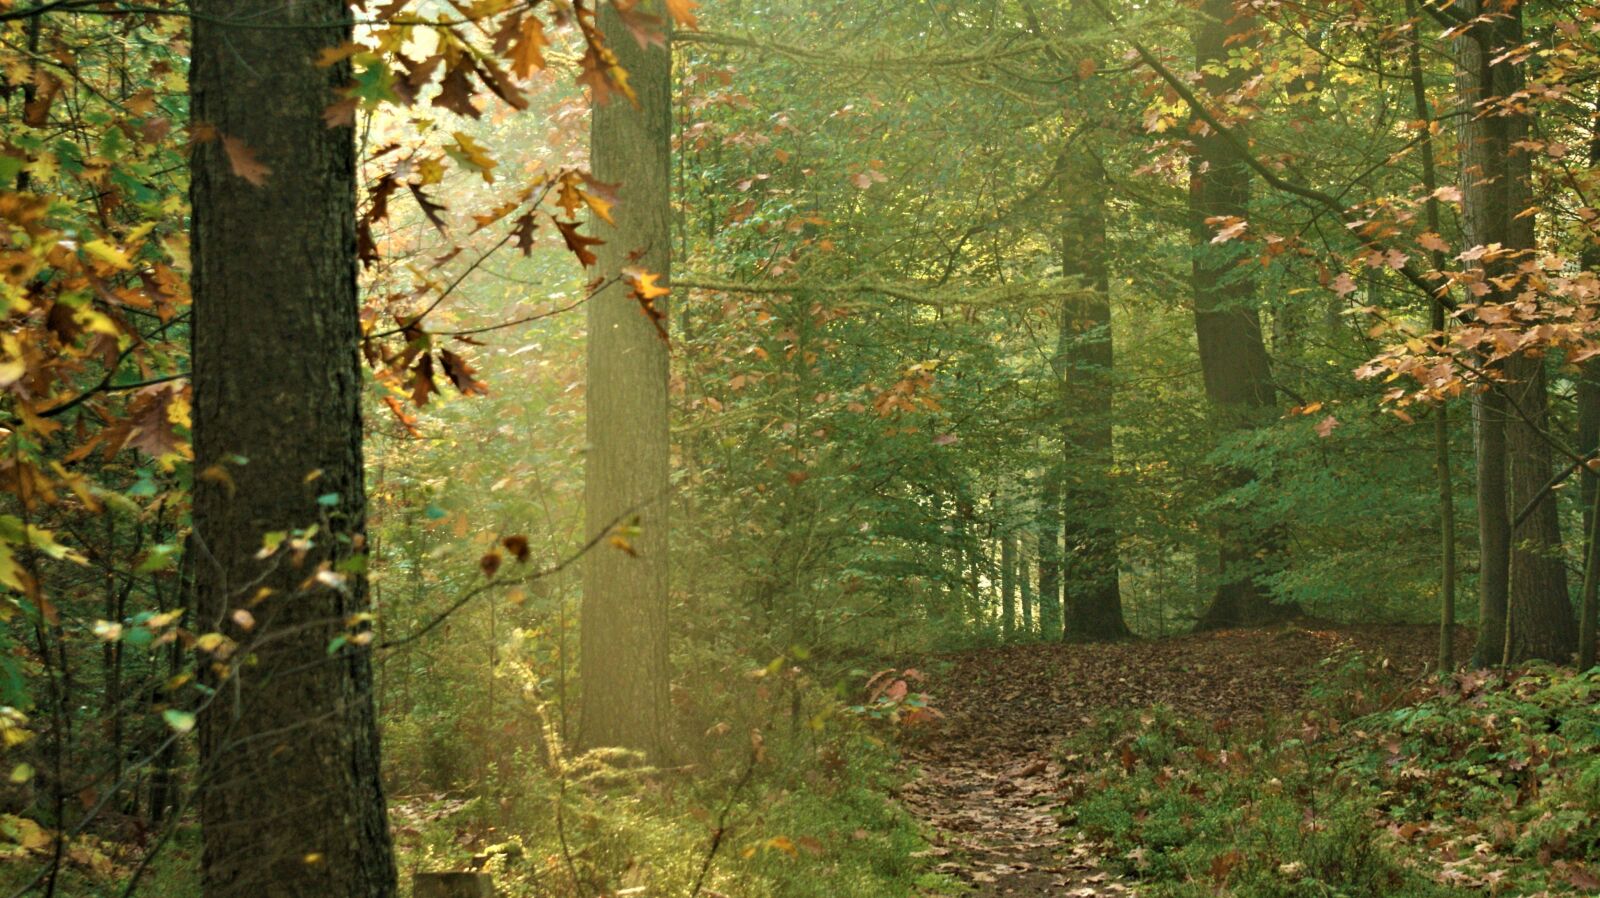 Sony Alpha DSLR-A350 sample photo. Fog, autumn, forest photography